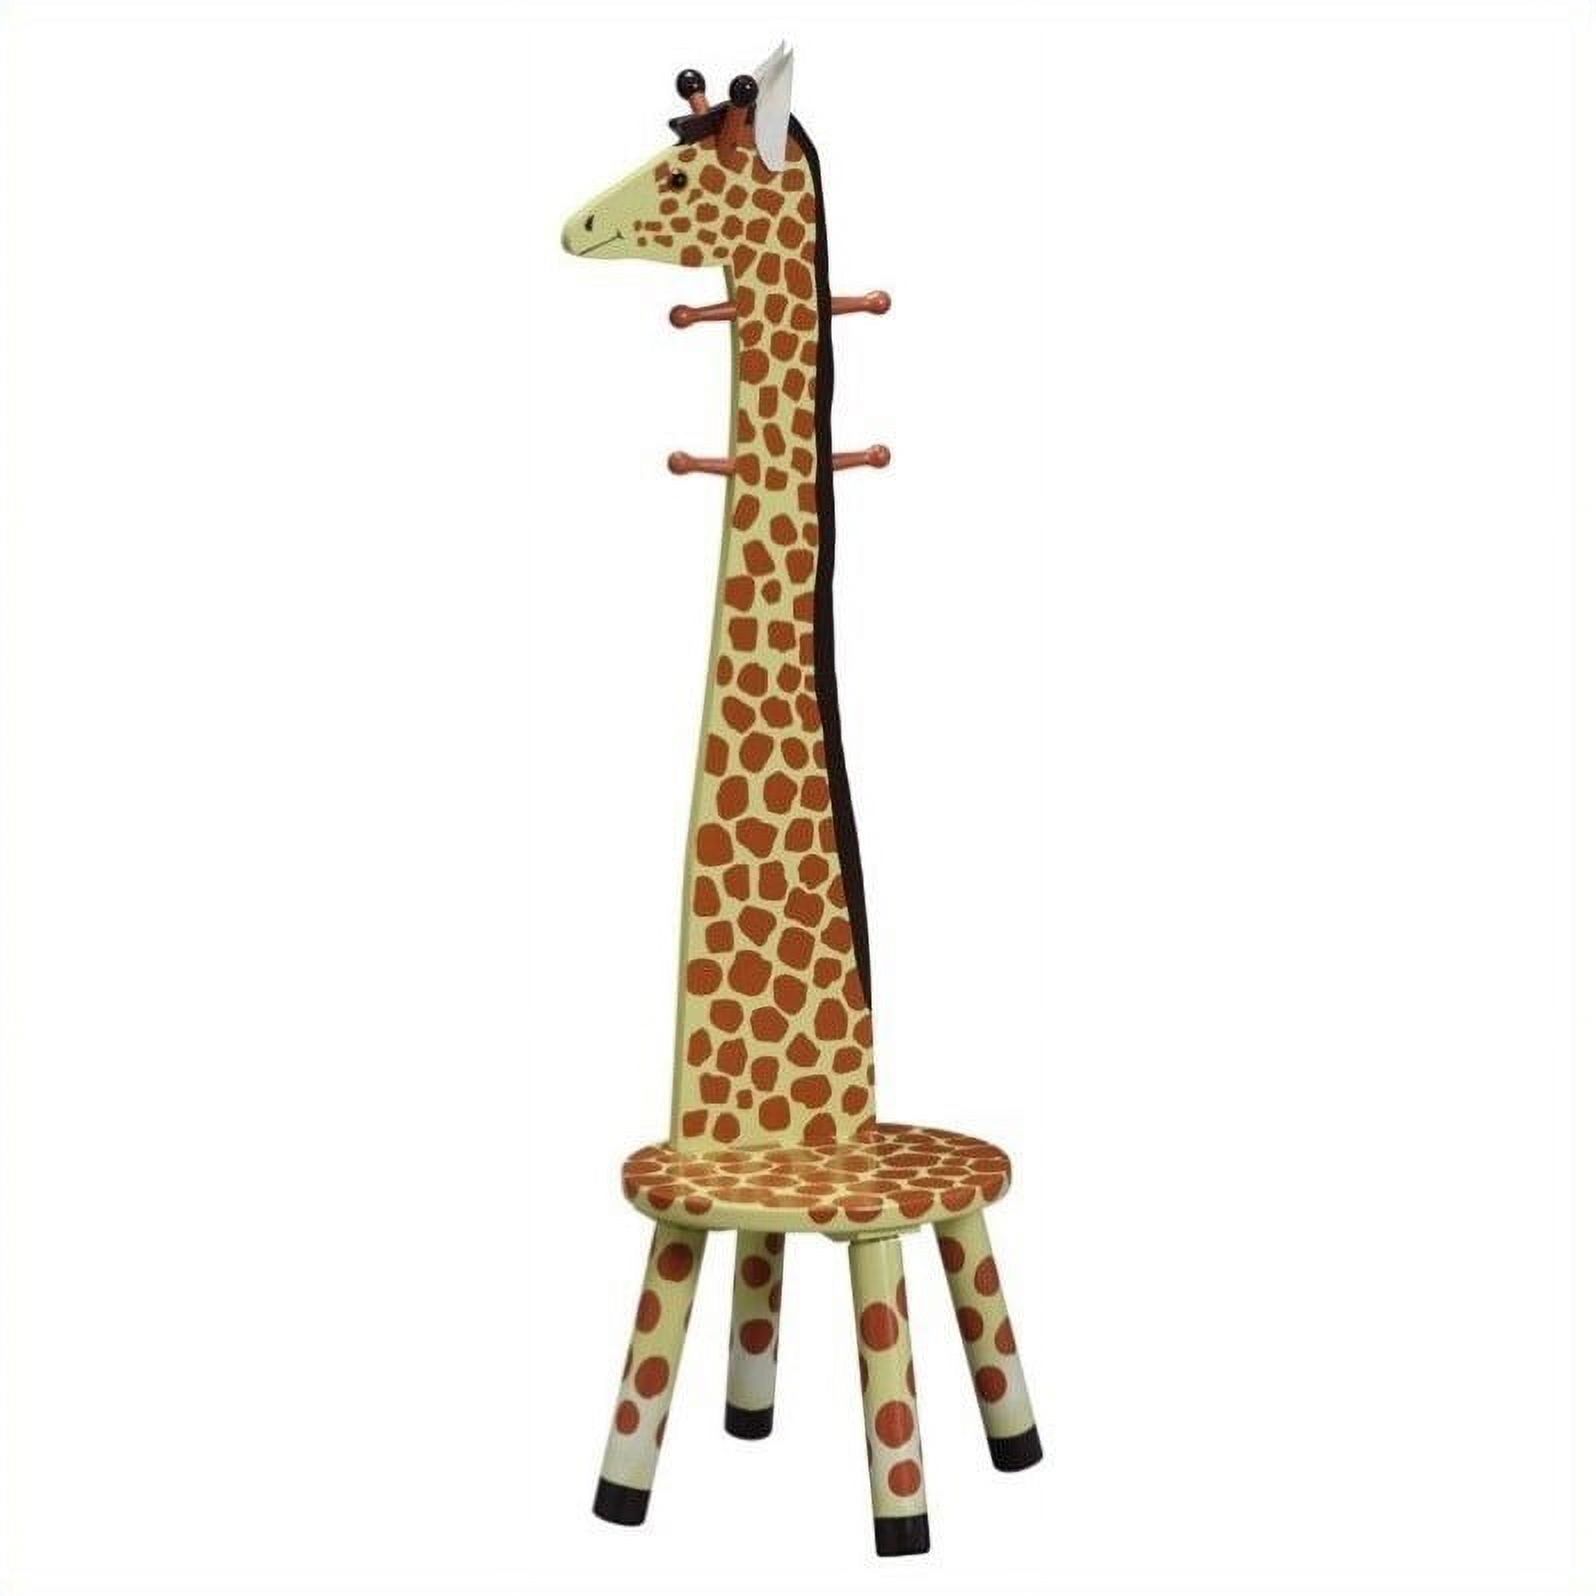 Teamson Design Giraffe Wooden Bedroom Kids Indoor Standing Coat Rack and Stool - image 1 of 3